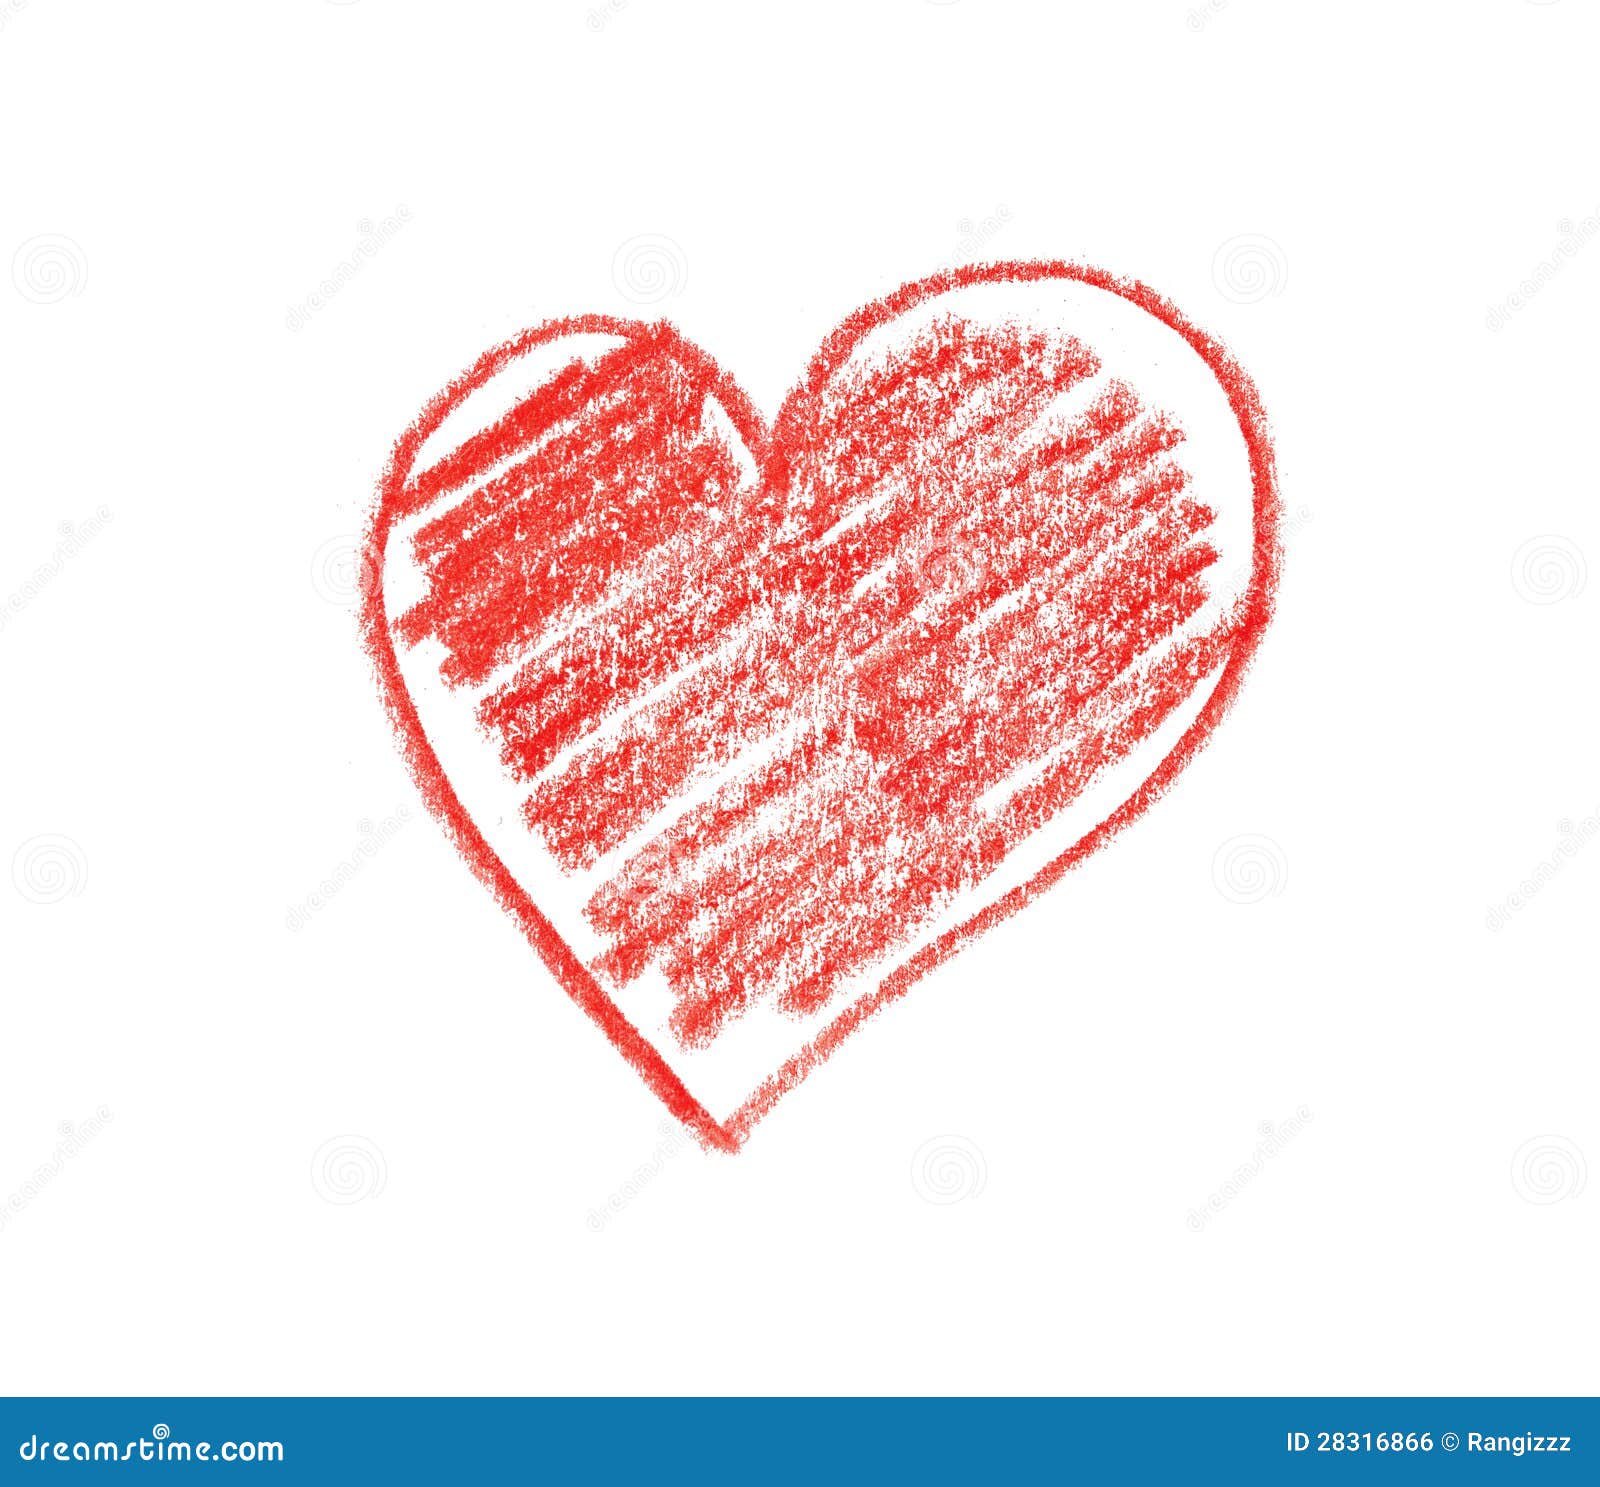 crayon heart 